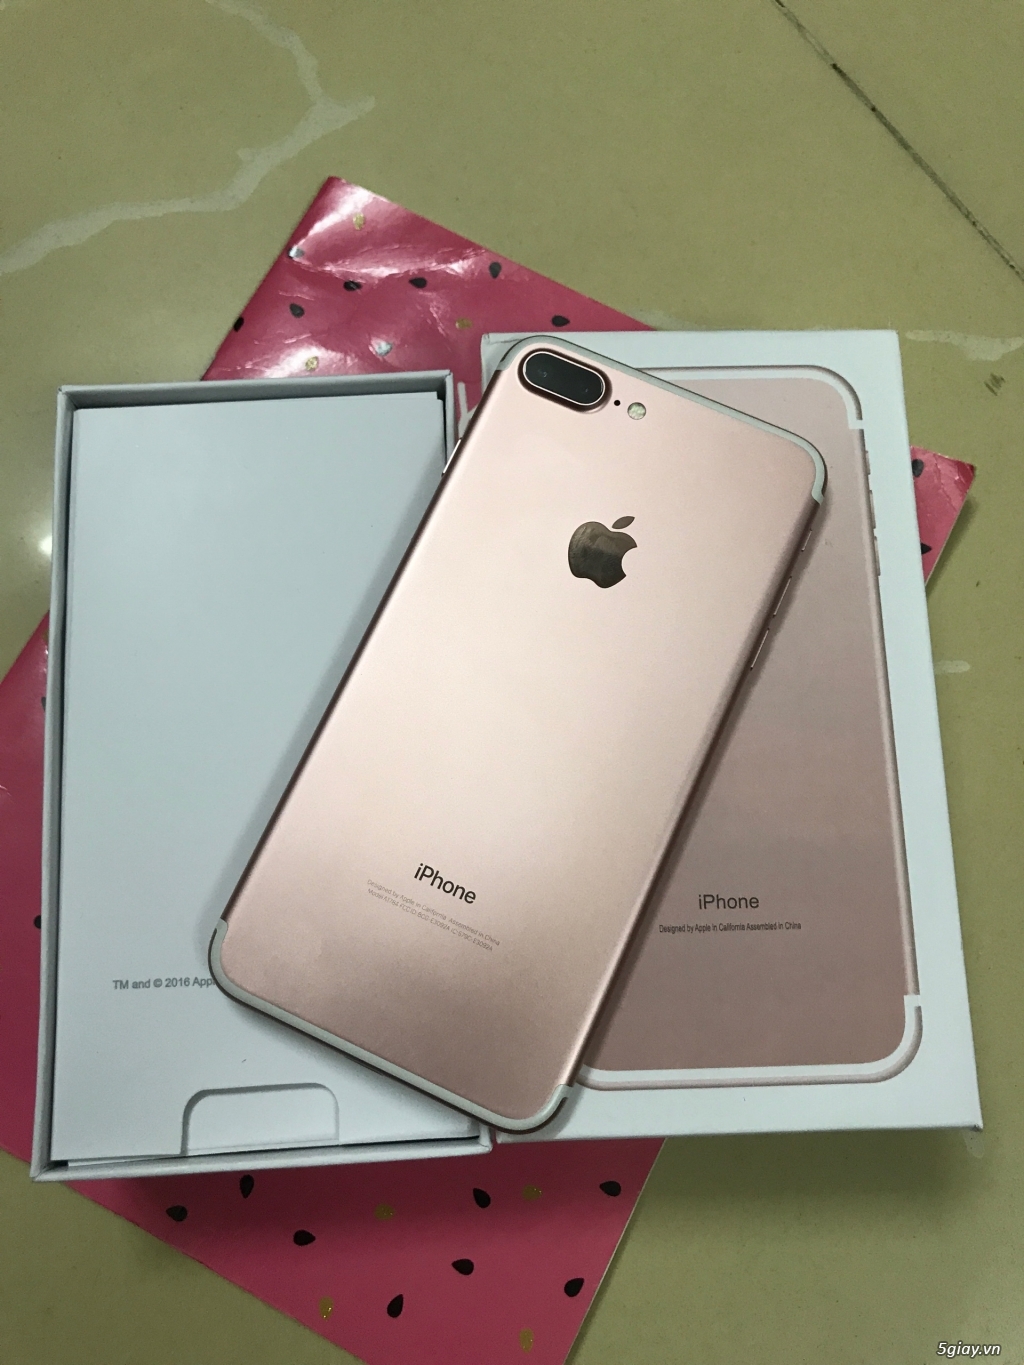 Bán iphone 7 plus vàng hồng 32gb 99.9% đẹp như mới nguyên zin - 1